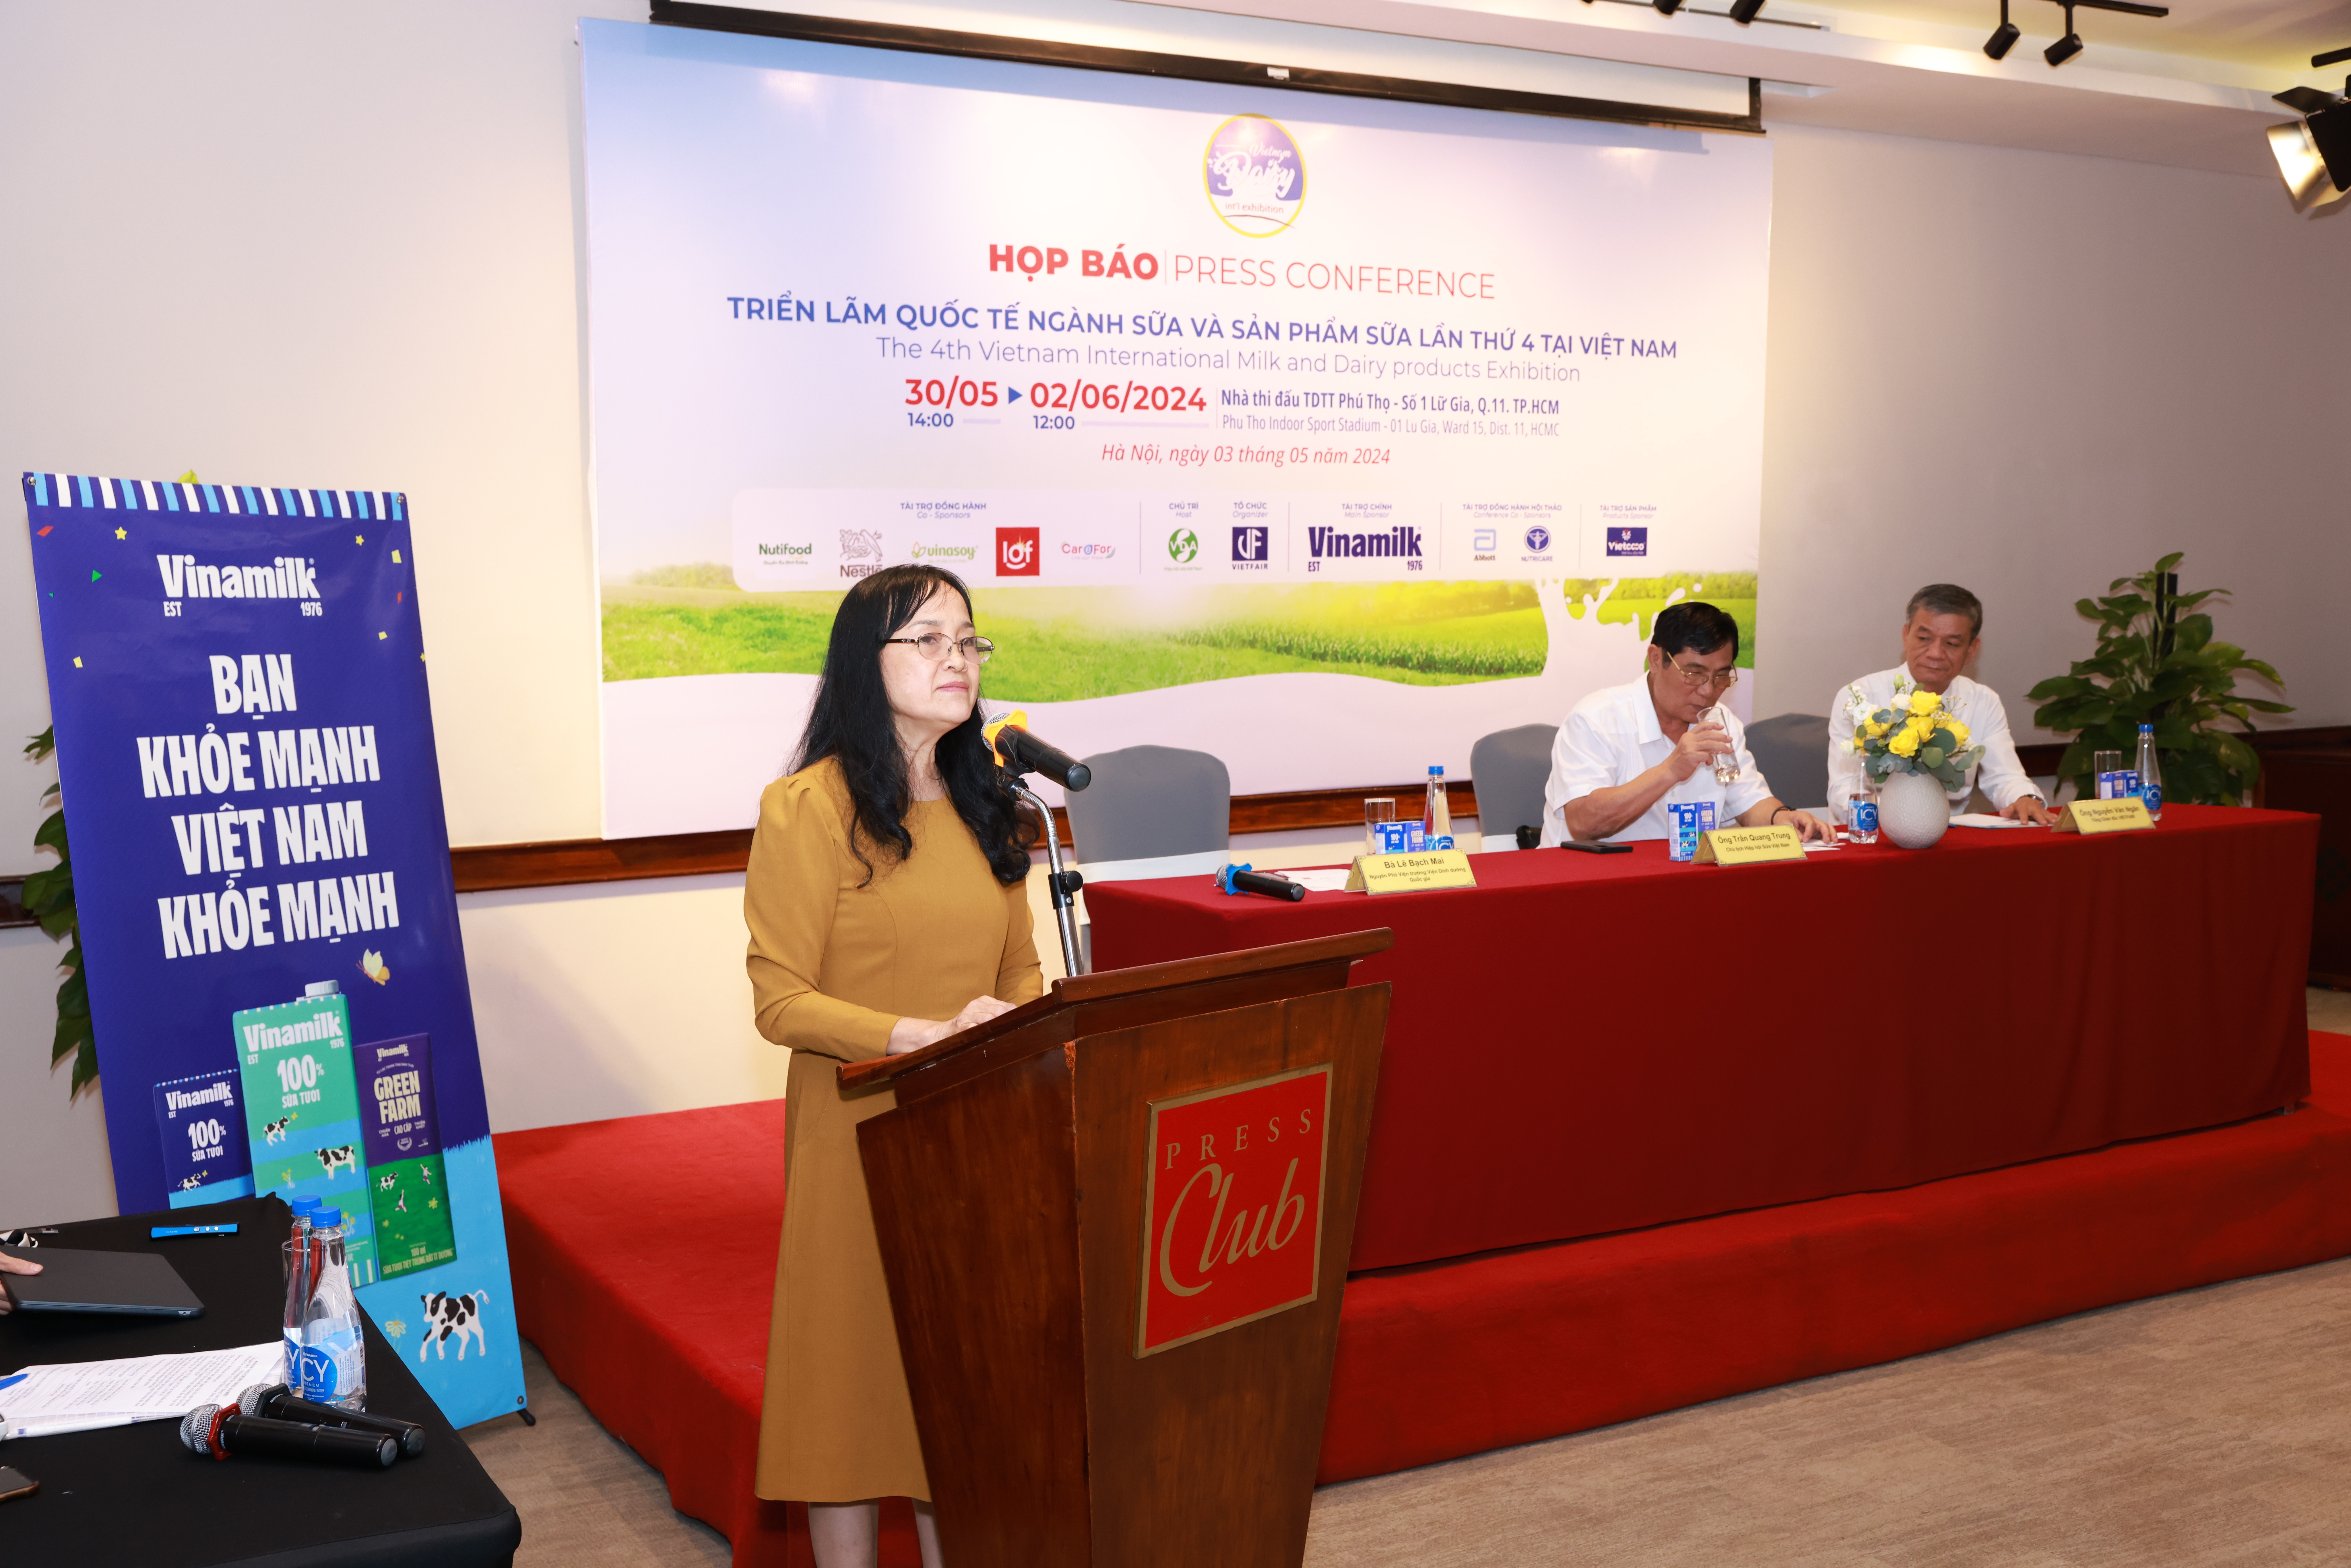 Bà Nguyễn Thị Minh Tâm - Giám đốc chi nhánh công ty Vinamilk tại Hà Nội phát biểu tại buổi họp báo.